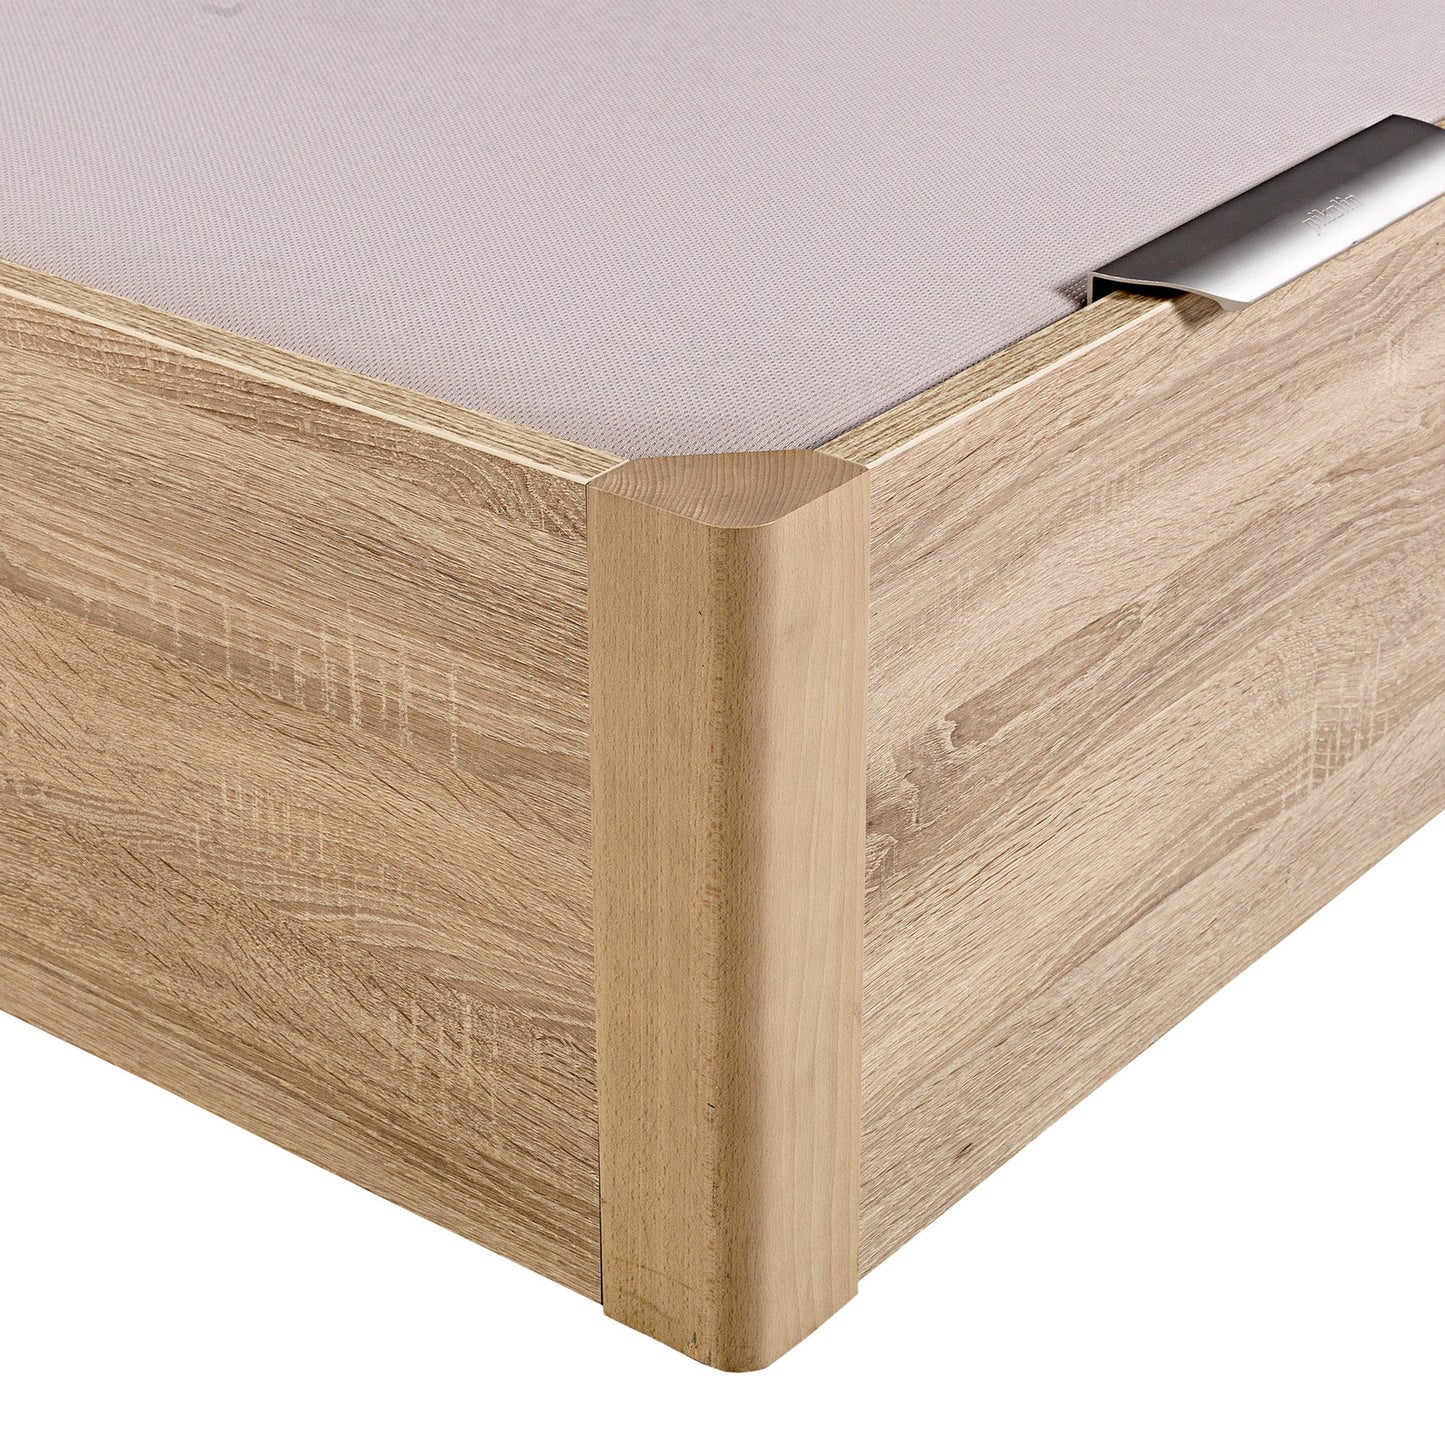 Canapé abatible de madera de alta capacidad tapa doble de color natural - DESIGN - 200x182